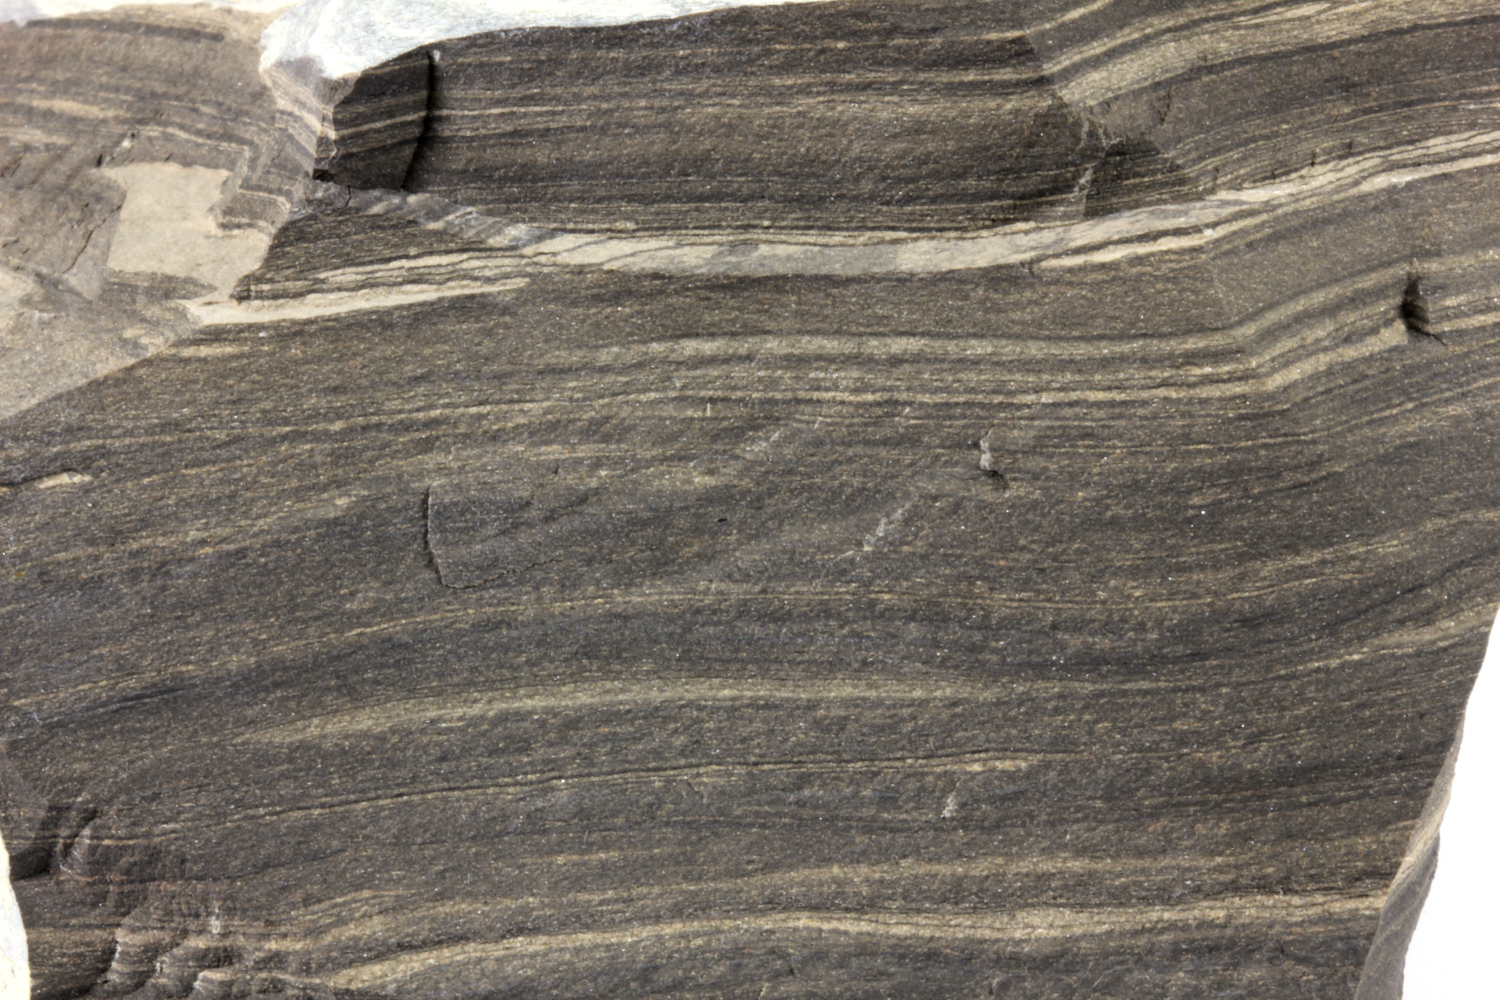 Calcaire lithographique bitumineux Laminites bitumineuses d’Orbagnoux Jura  Corbonod Orbagnoux